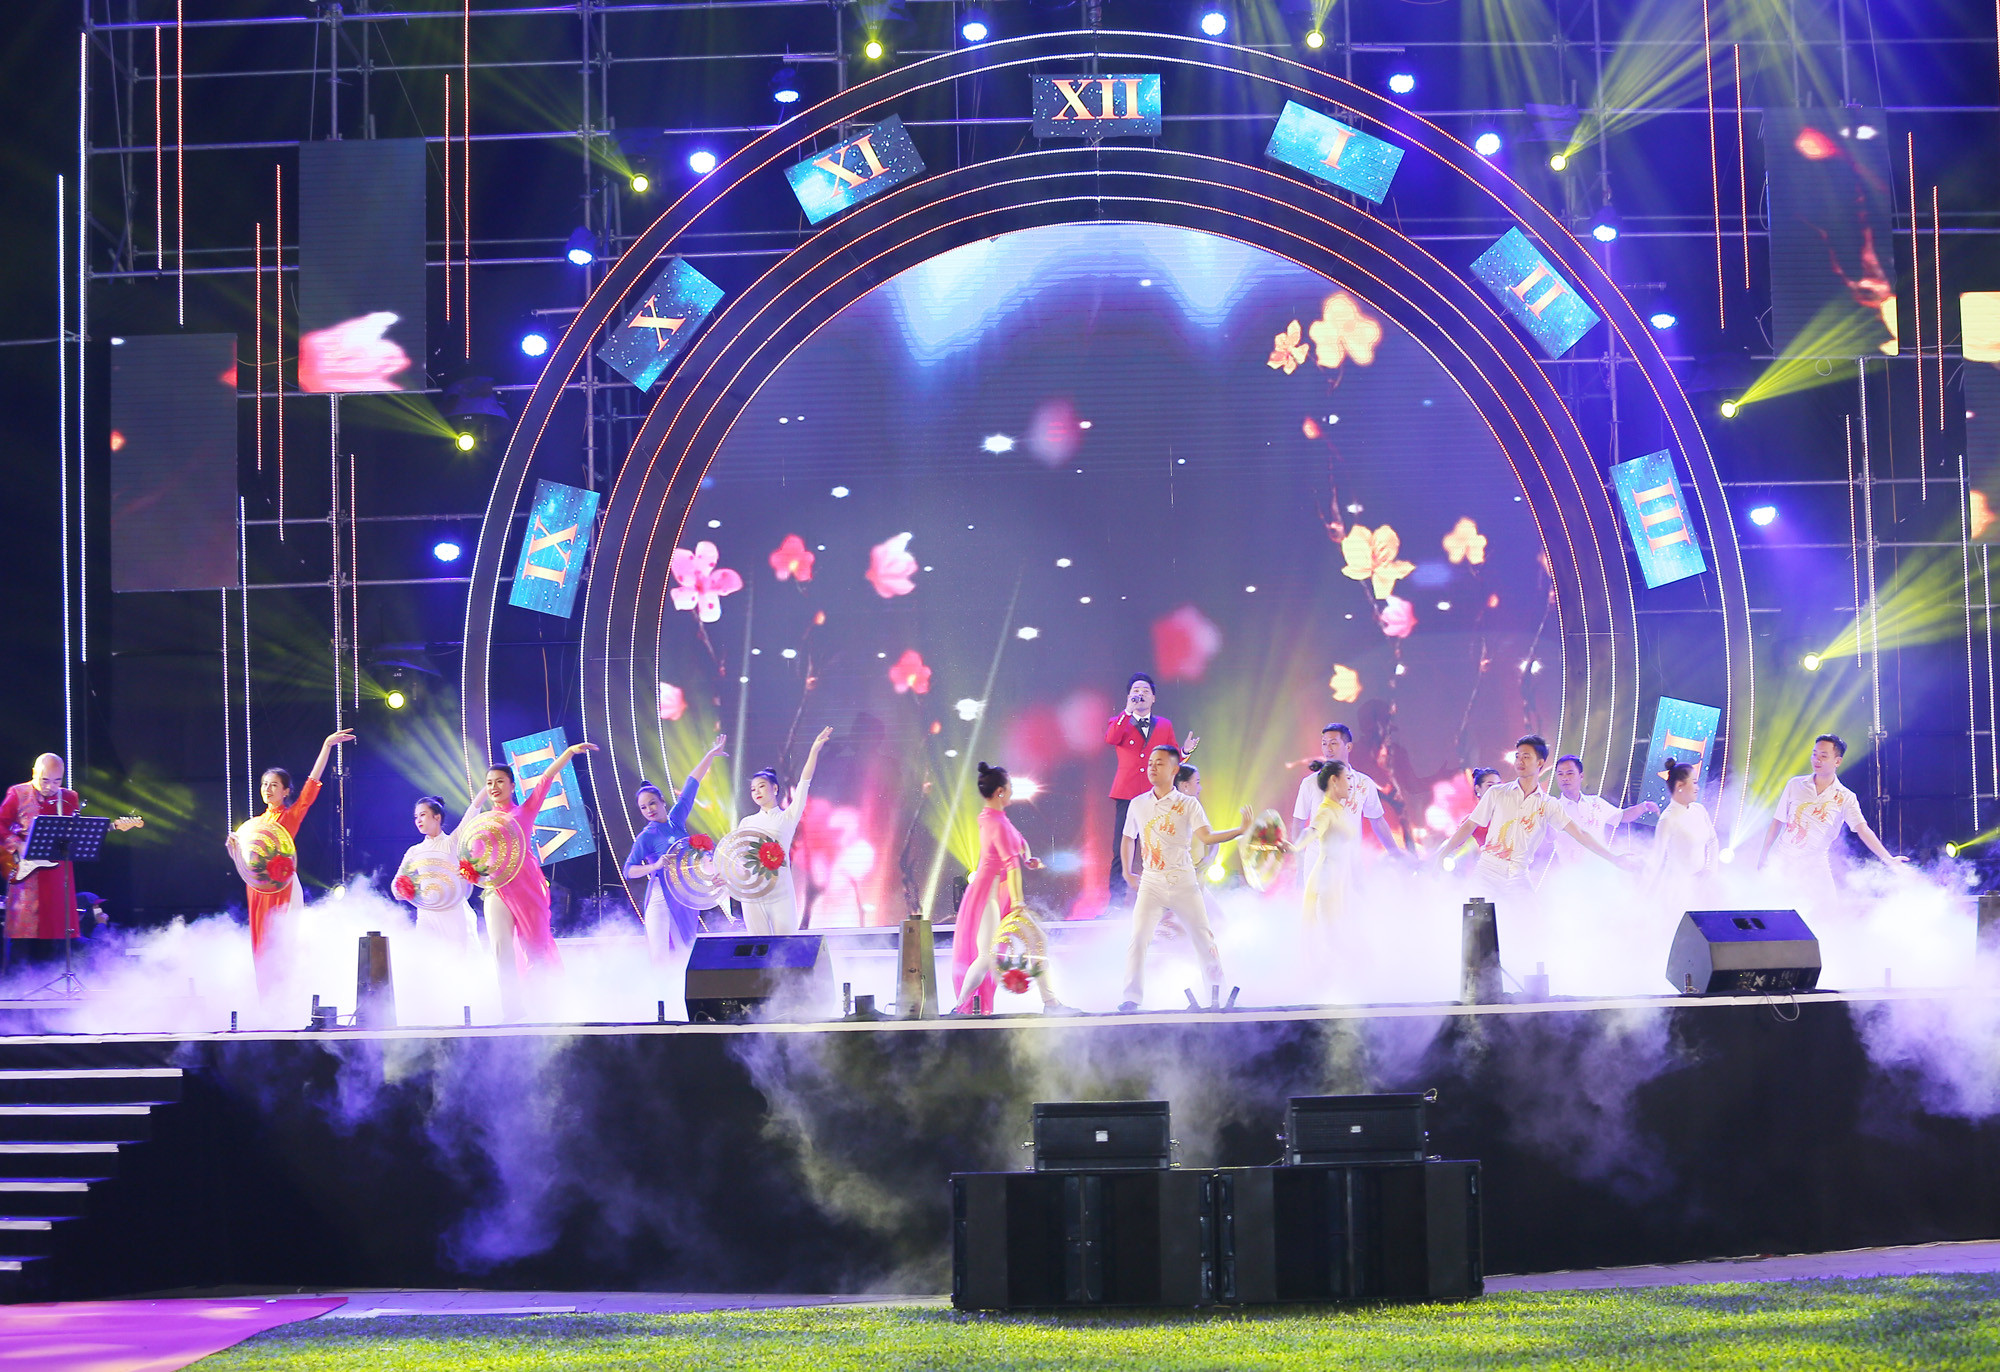 Tại đây, UBND tỉnh tỏ chức Chương trình nghệ thuật “Nghệ An chào năm mới 2021” với những tiết mục ca - múa - nhạc đặc sắc và sôi động